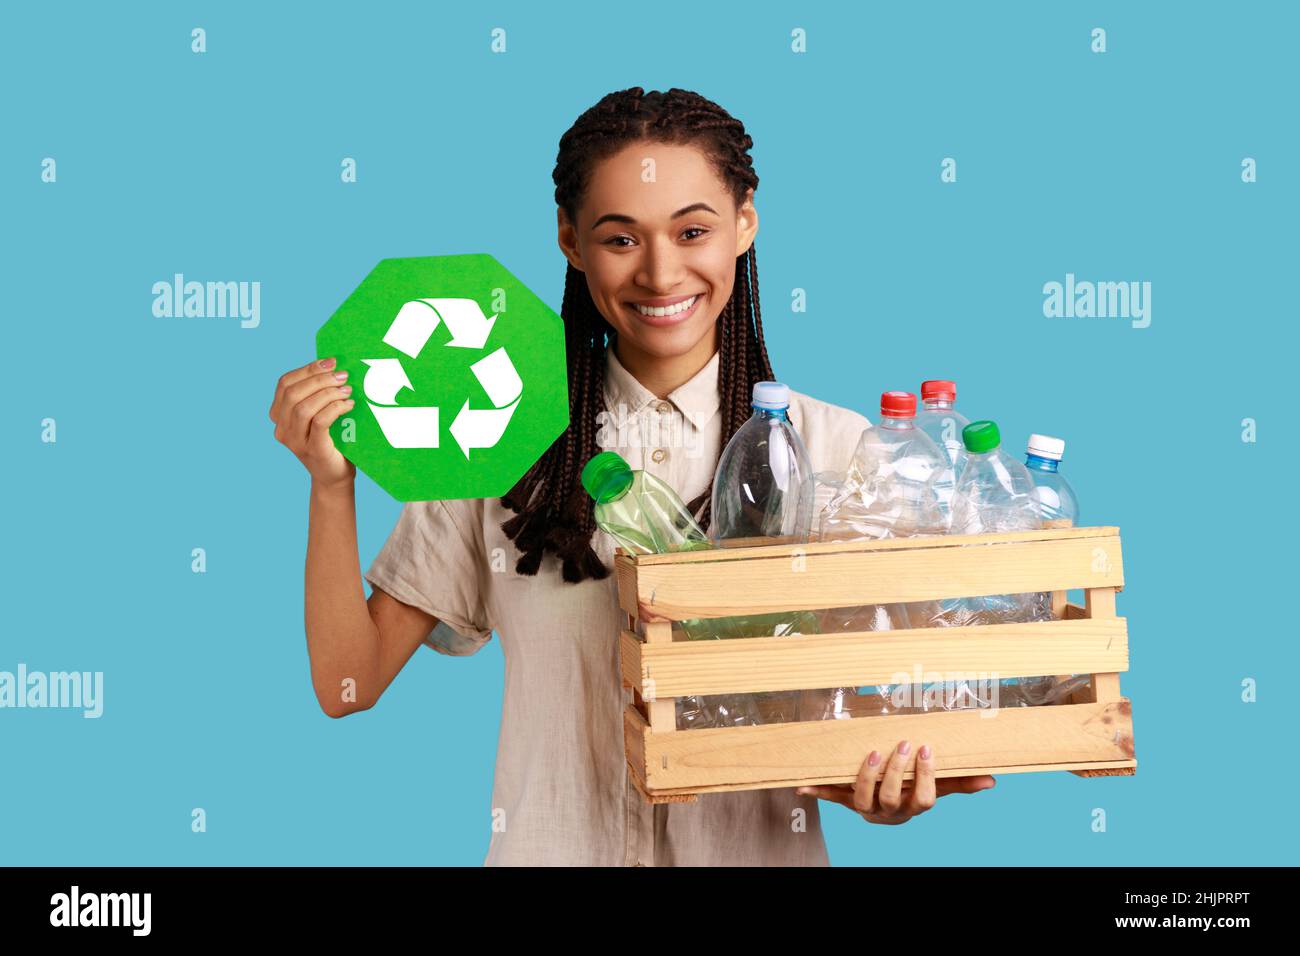 Mujer sonriente con dreadlocks negros caja de sujeción con botellas de plástico, reciclaje, clasificación de residuos y sostenibilidad, con camisa blanca. Estudio en interior grabado aislado sobre fondo azul. Foto de stock